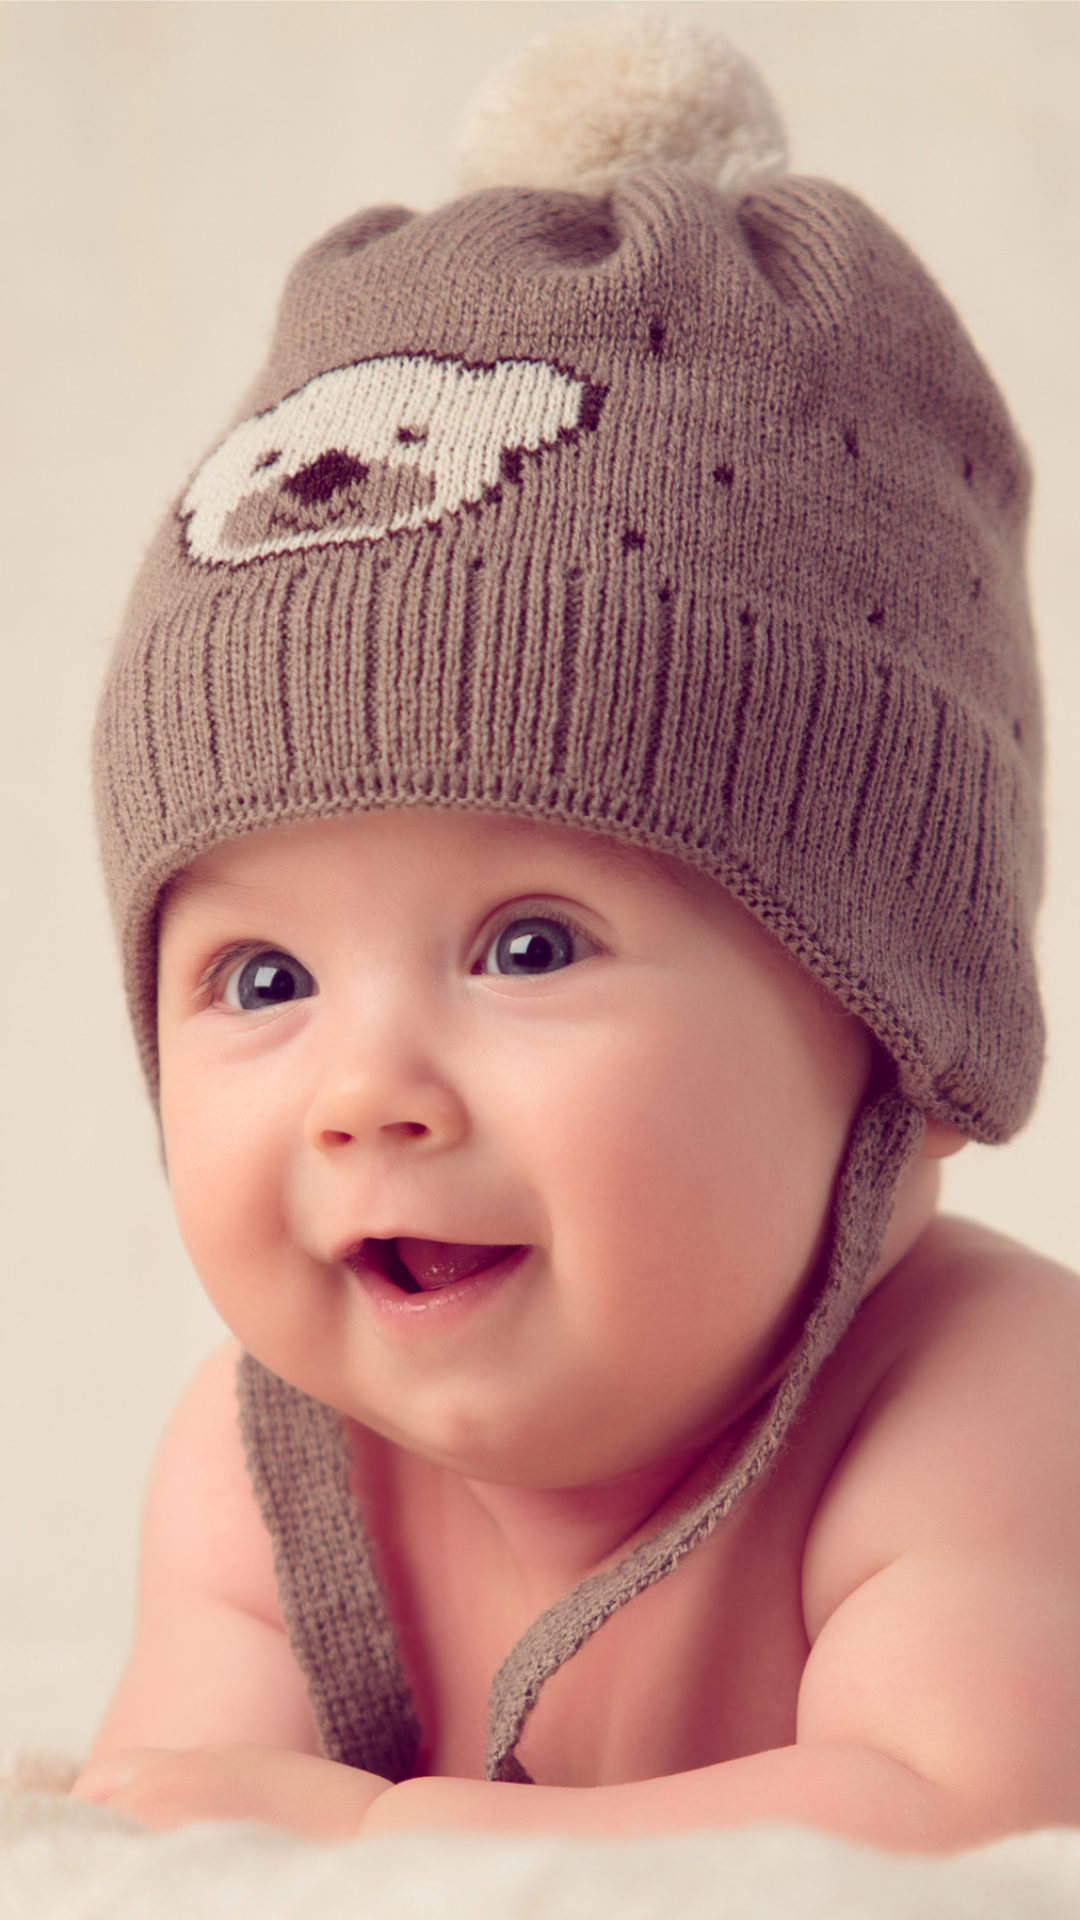 fond d'écran mignon bébé hd pour mobile,bonnet en tricot,enfant,bonnet,vêtements,rose